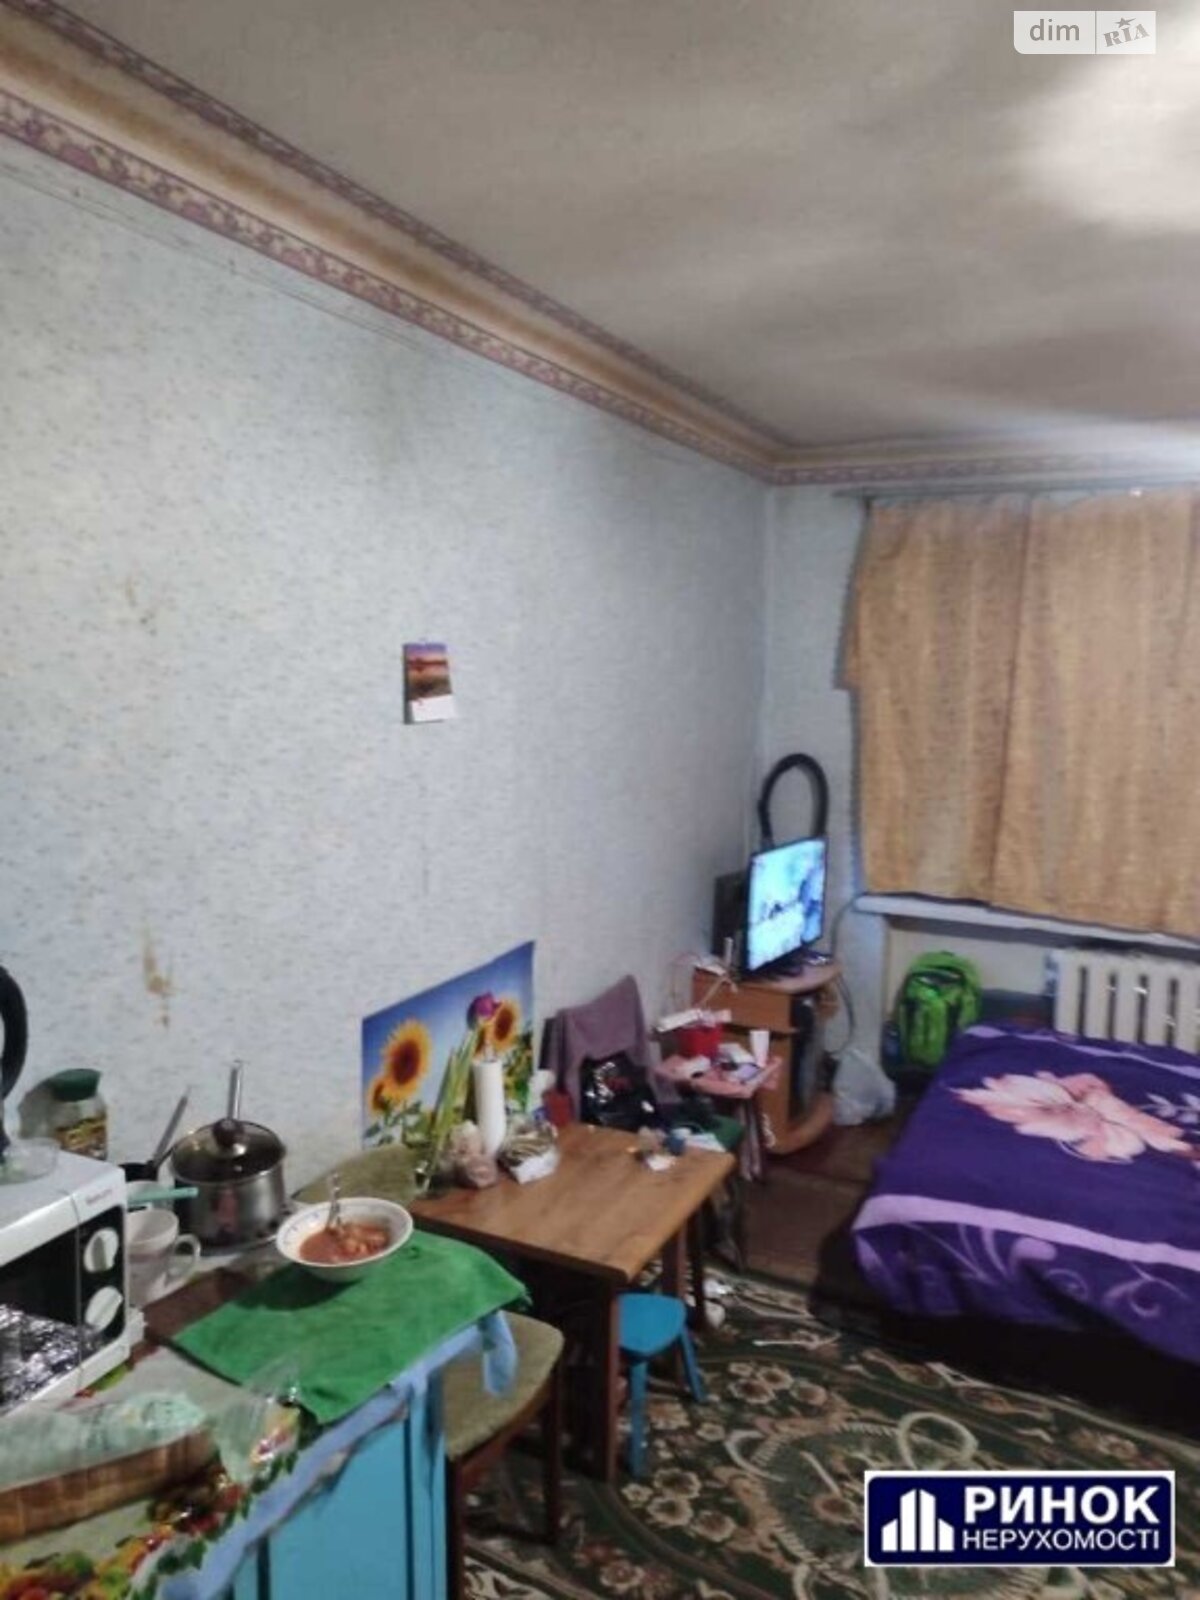 Кімната в Полтаві на вул. Духова в районі 5-а школа на продаж фото 1